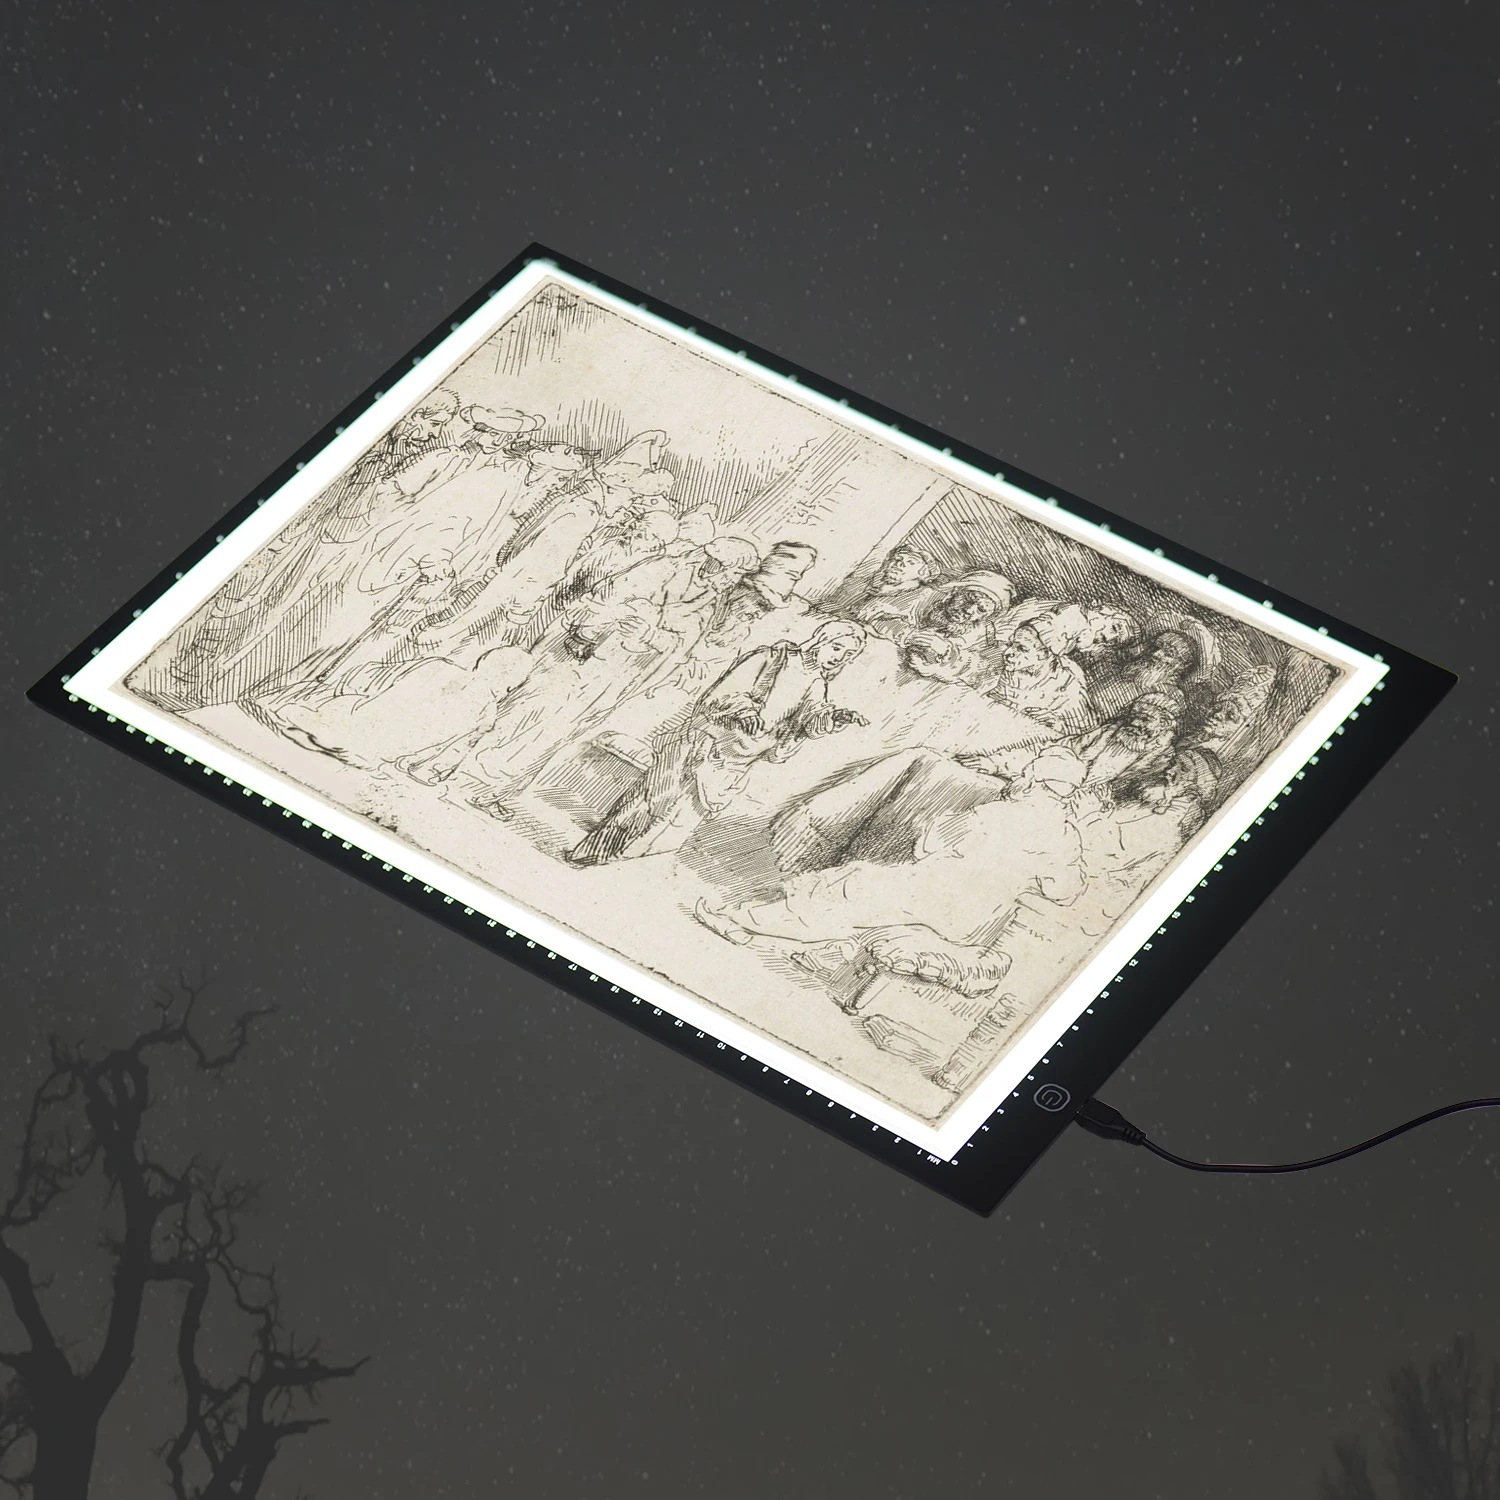 A3 светодиодный светильник Box Pad Tracer графический планшет Трассировка доска для рисования копировальная доска плавное затемнение для набросков каллиграфии